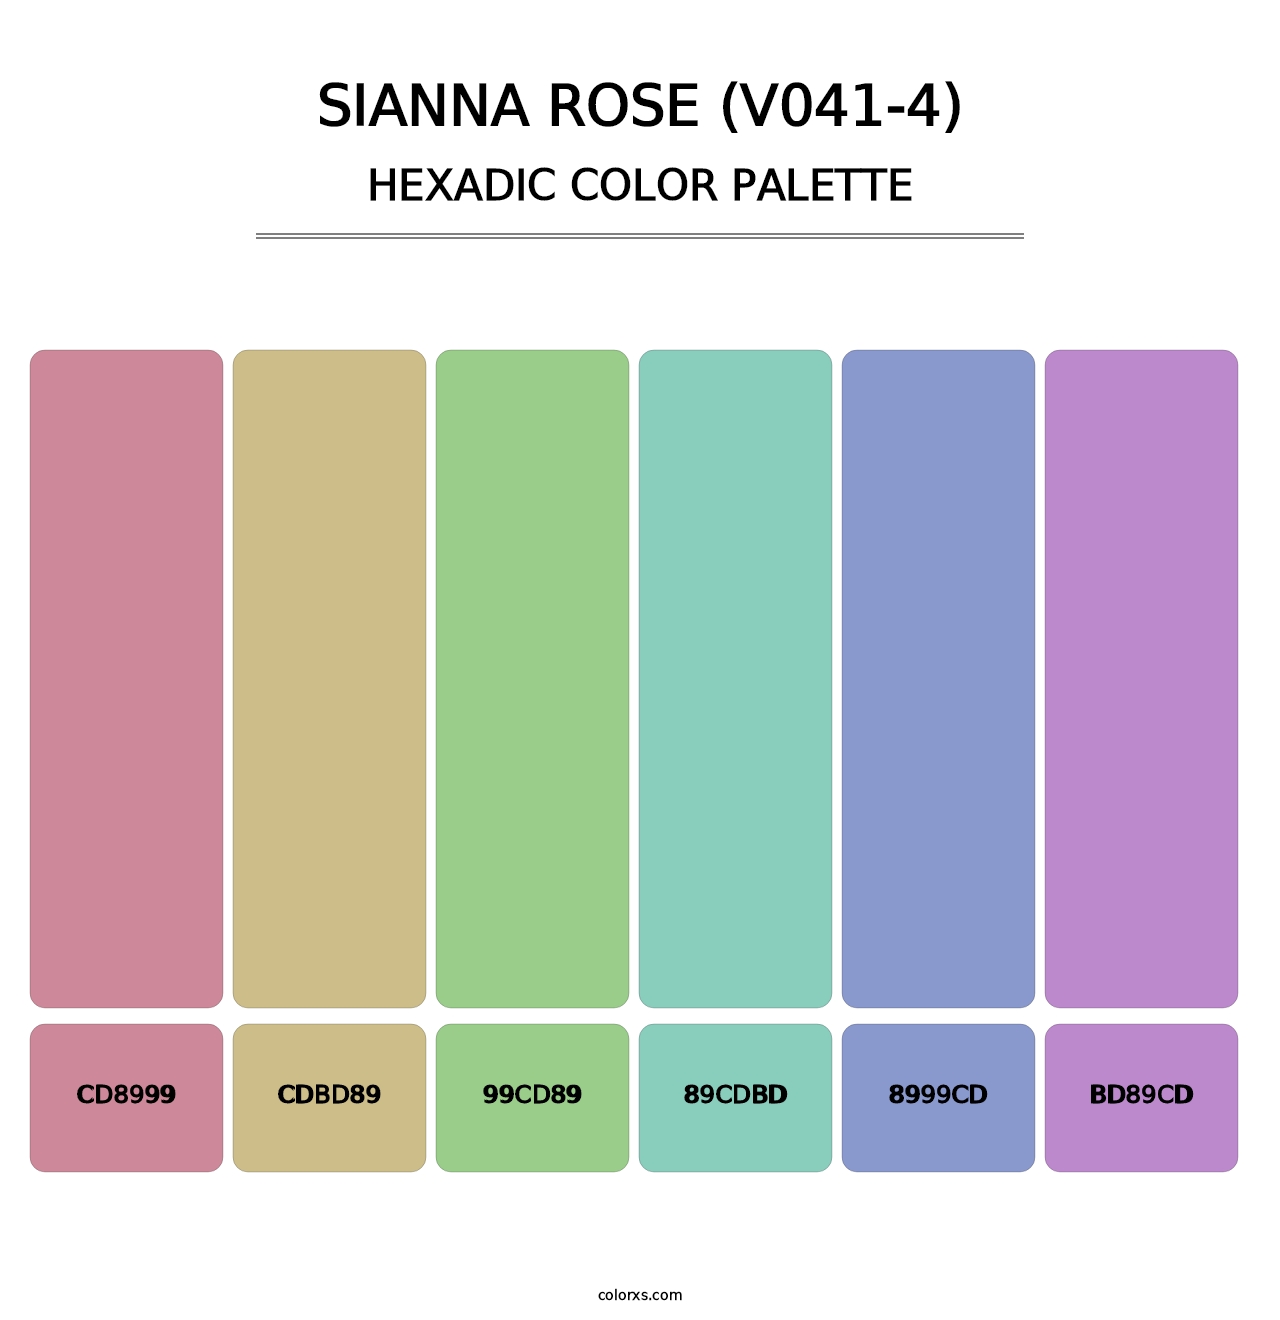 Sianna Rose (V041-4) - Hexadic Color Palette